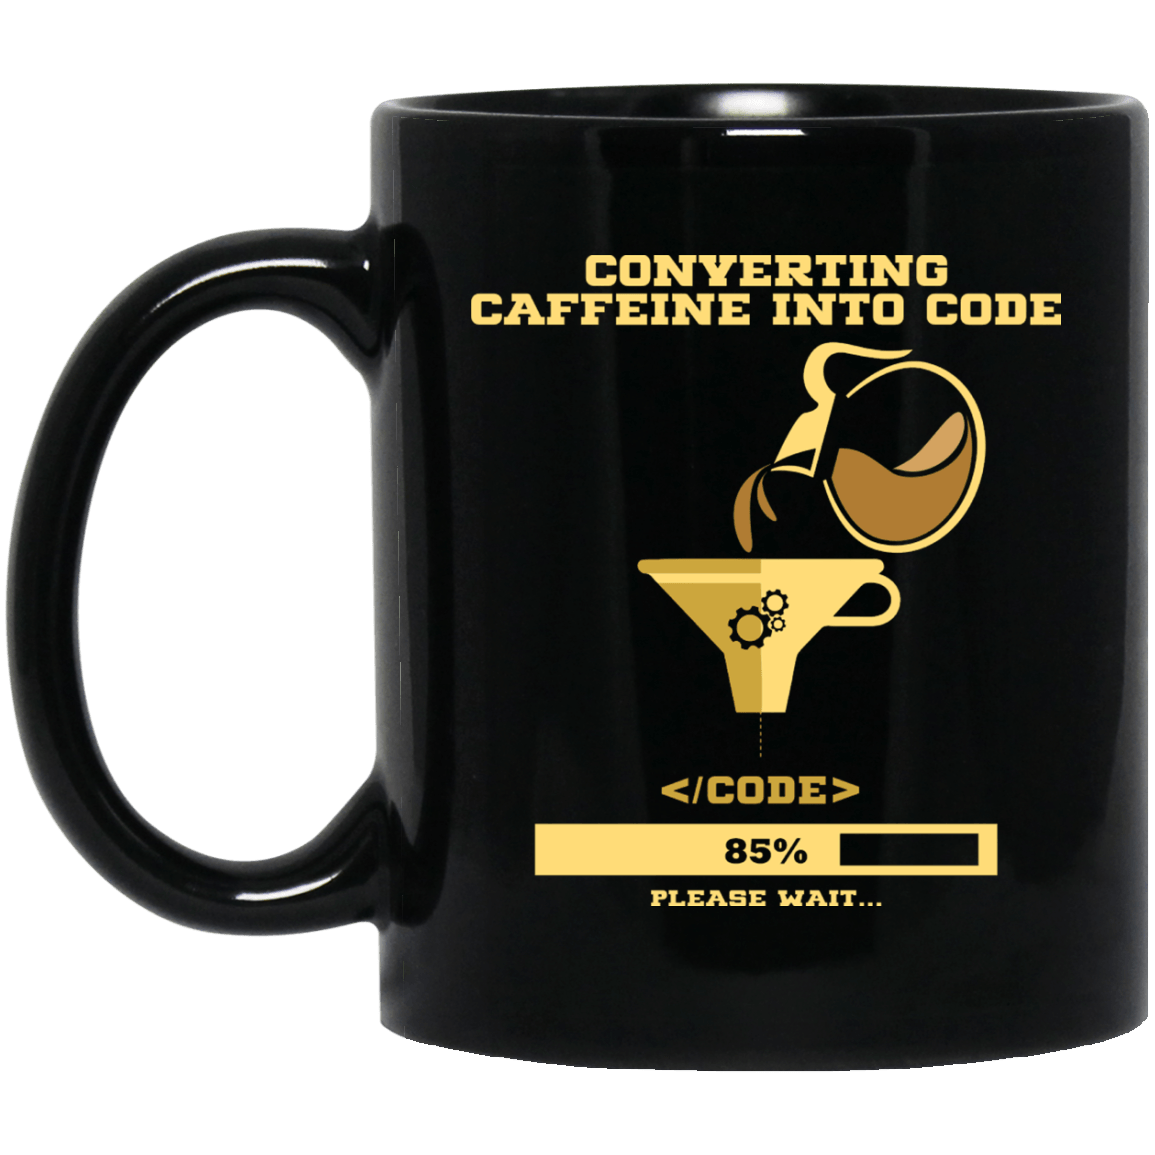 Convert Caffeine into Code Mug